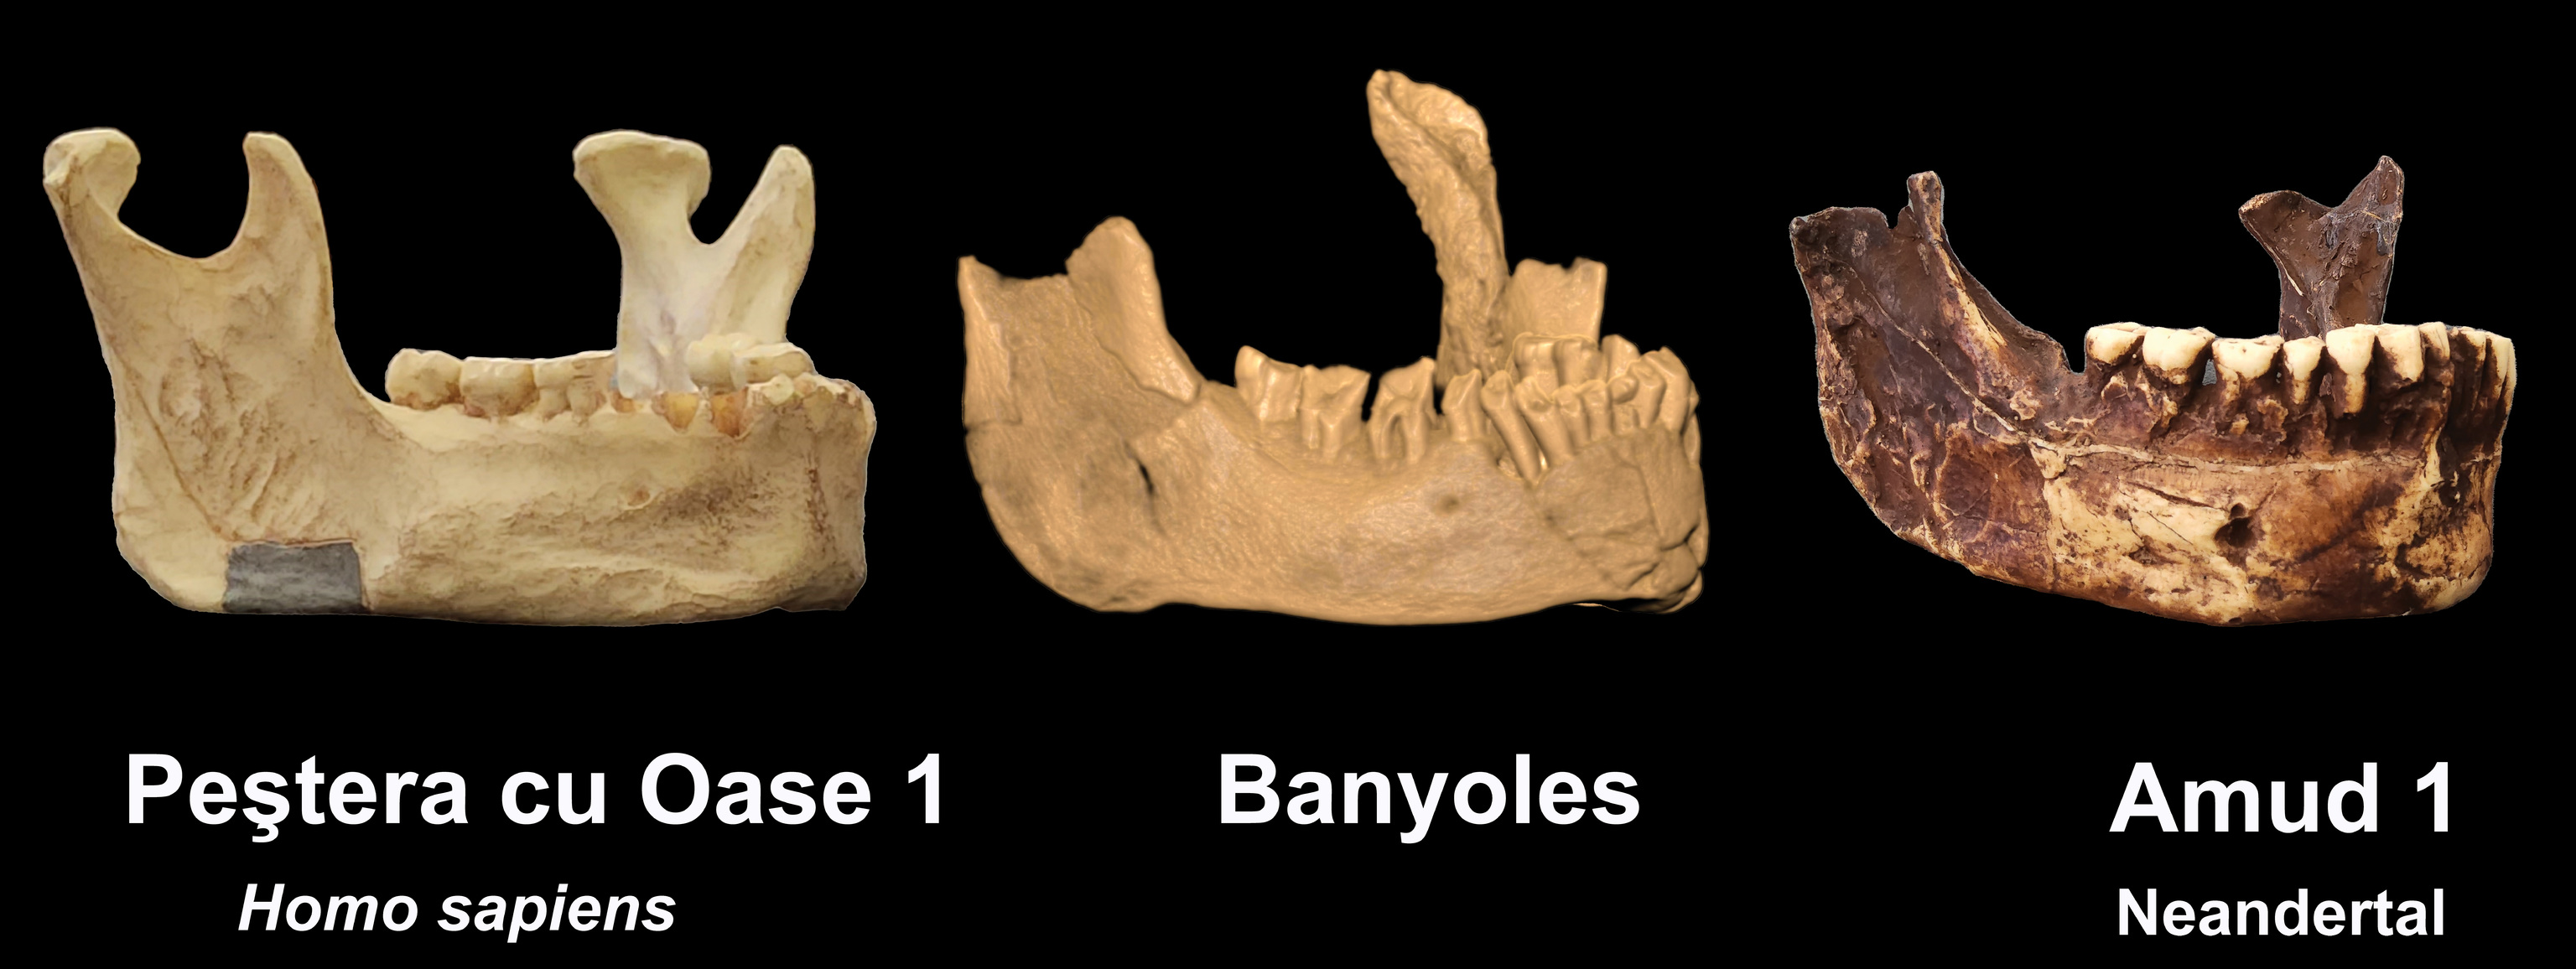 Comparación de la mandíbula de Banyoles con las de un 'sapiens' y un Neandertal.